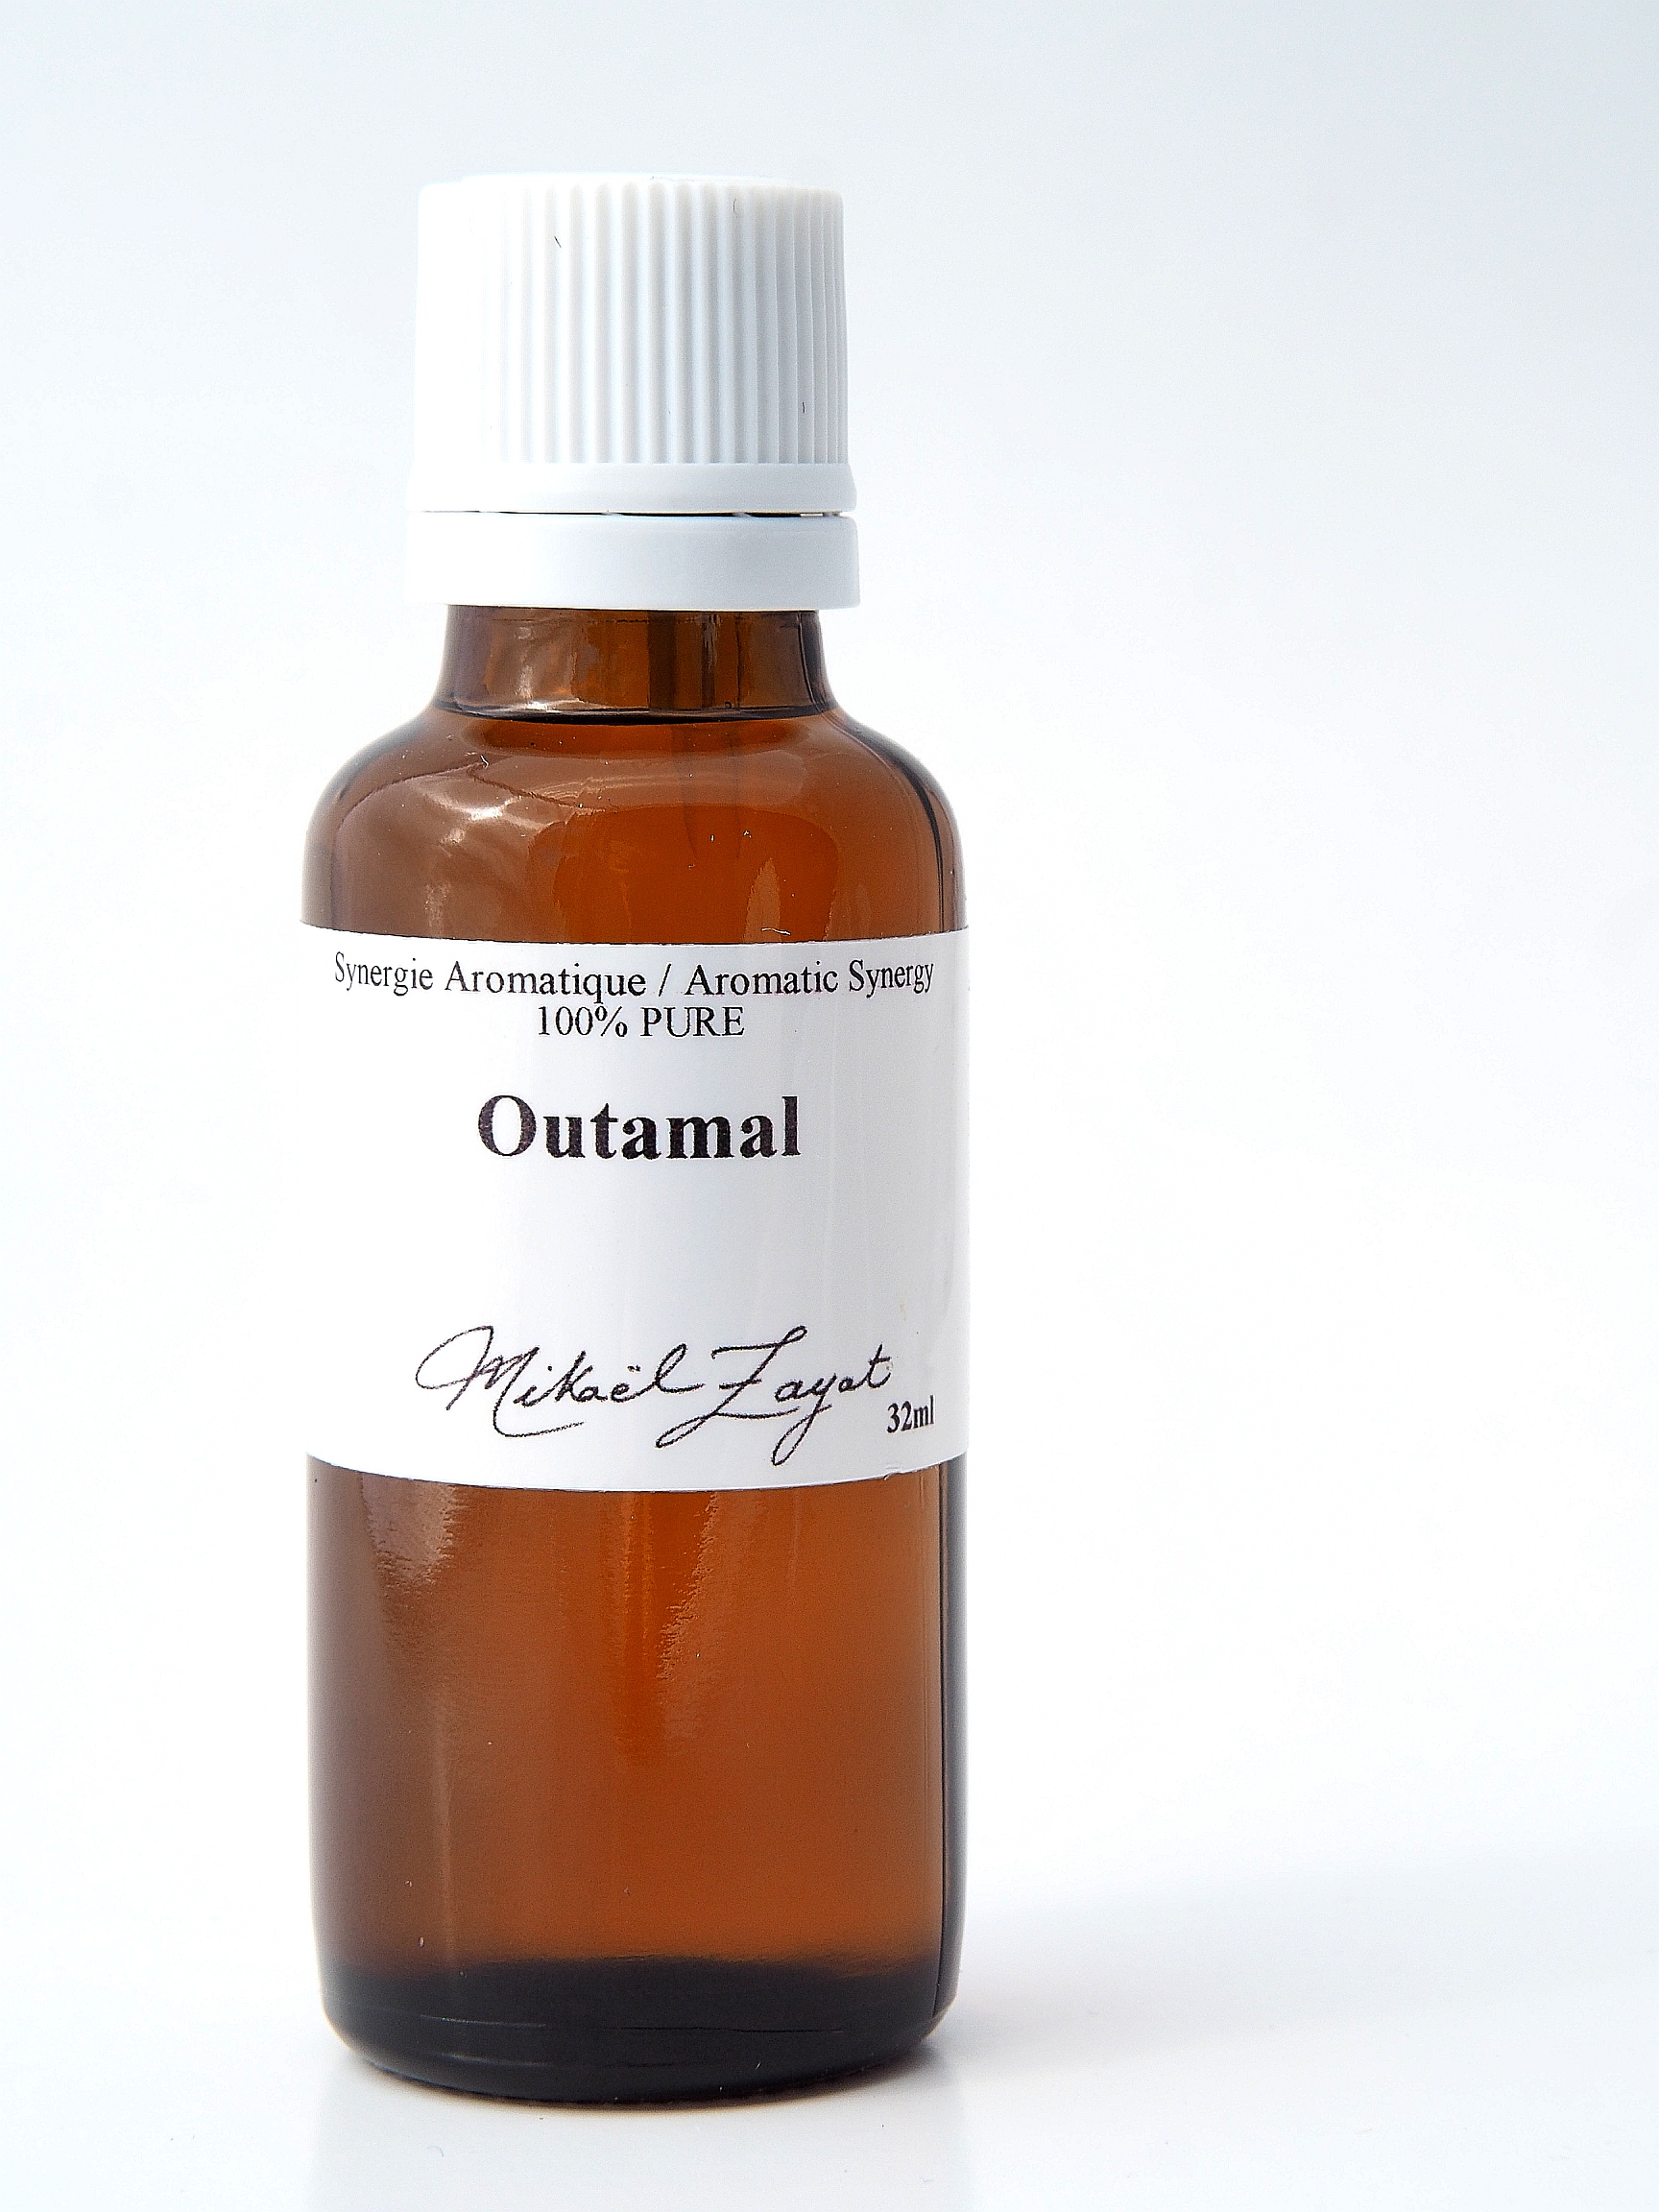 Outamal (32 ml)